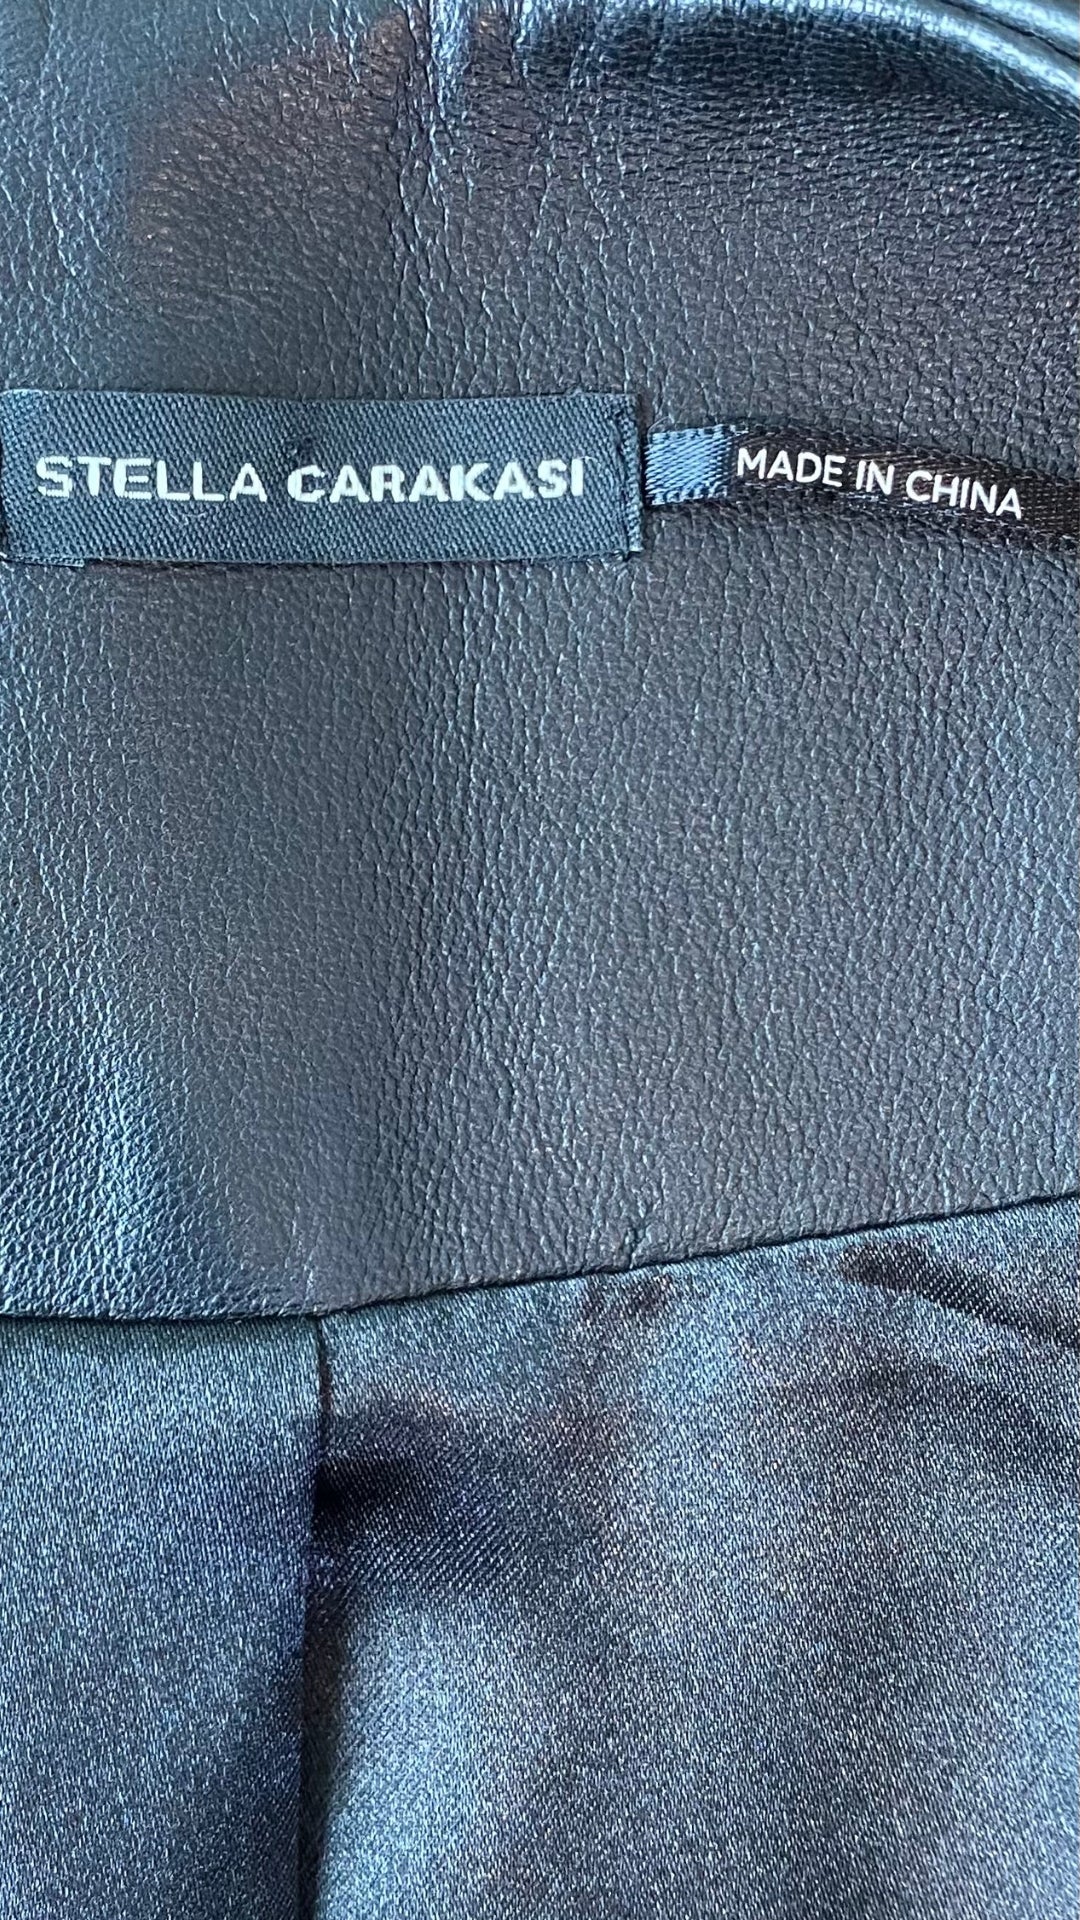 Veste en cuir style perfecto Stella Carakasi, taille small. Vue de l'étiquette de marque.